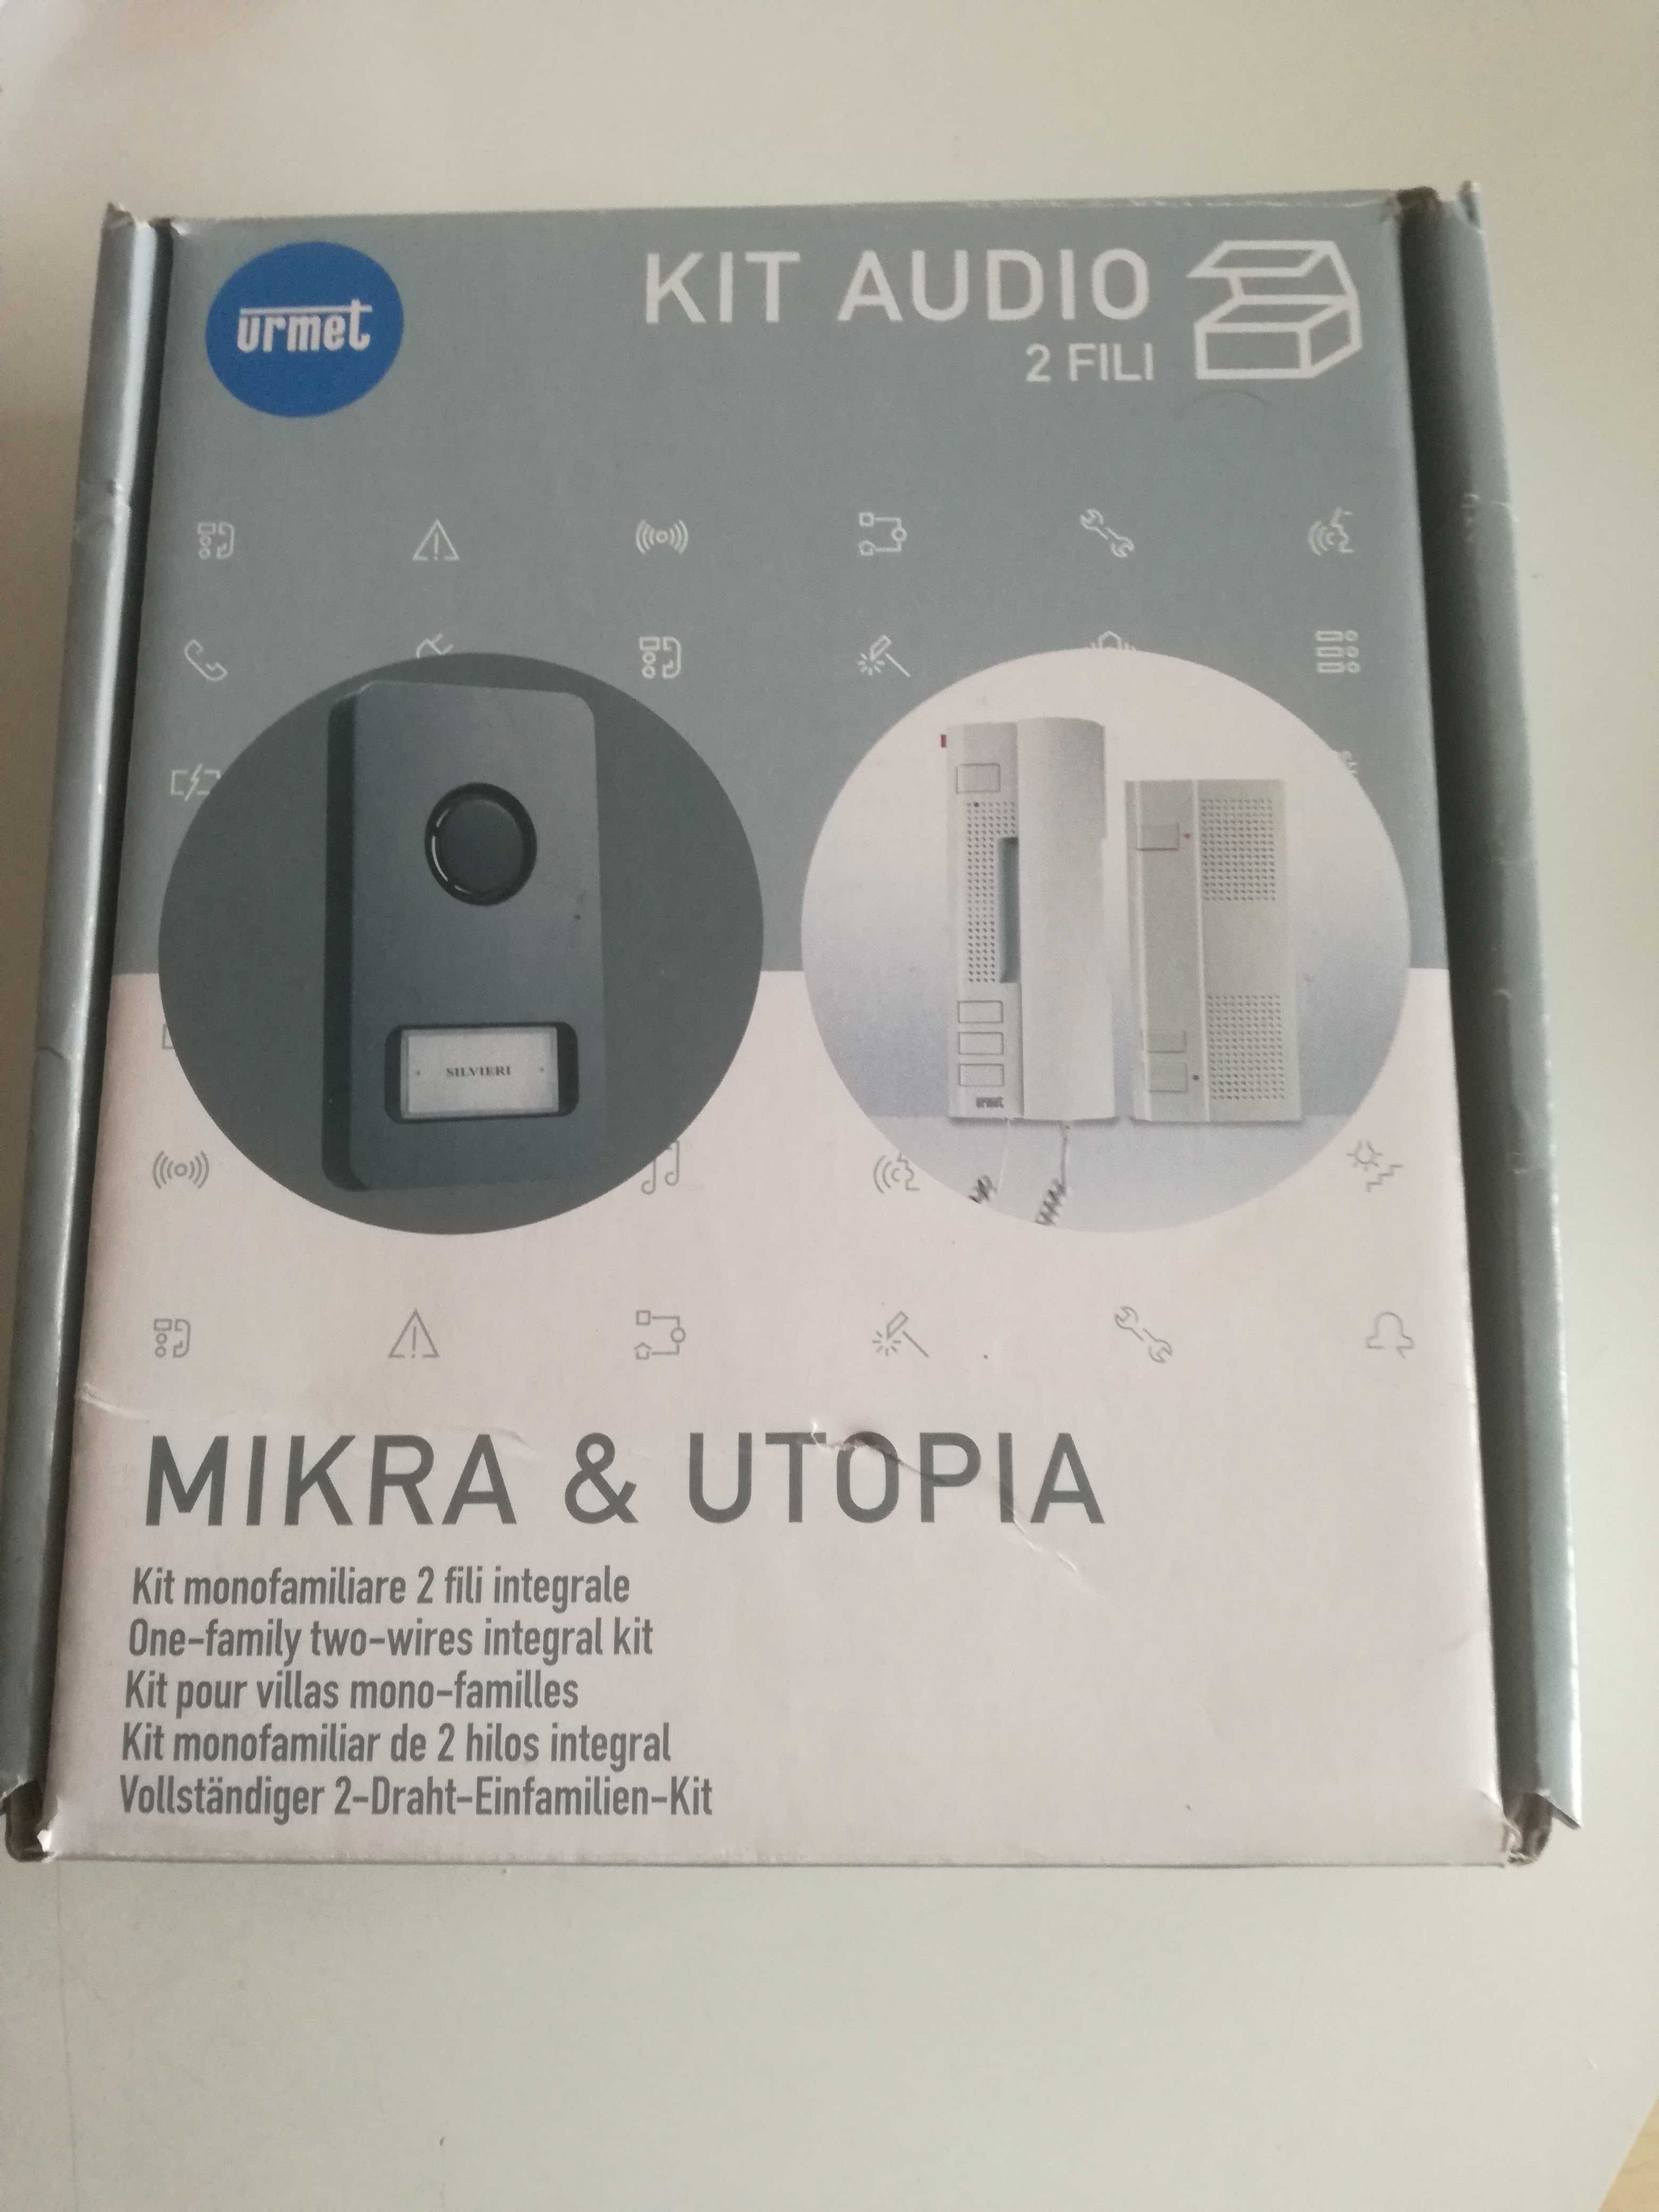 Kit audio Mikra e Utopia 1122/31 novo.